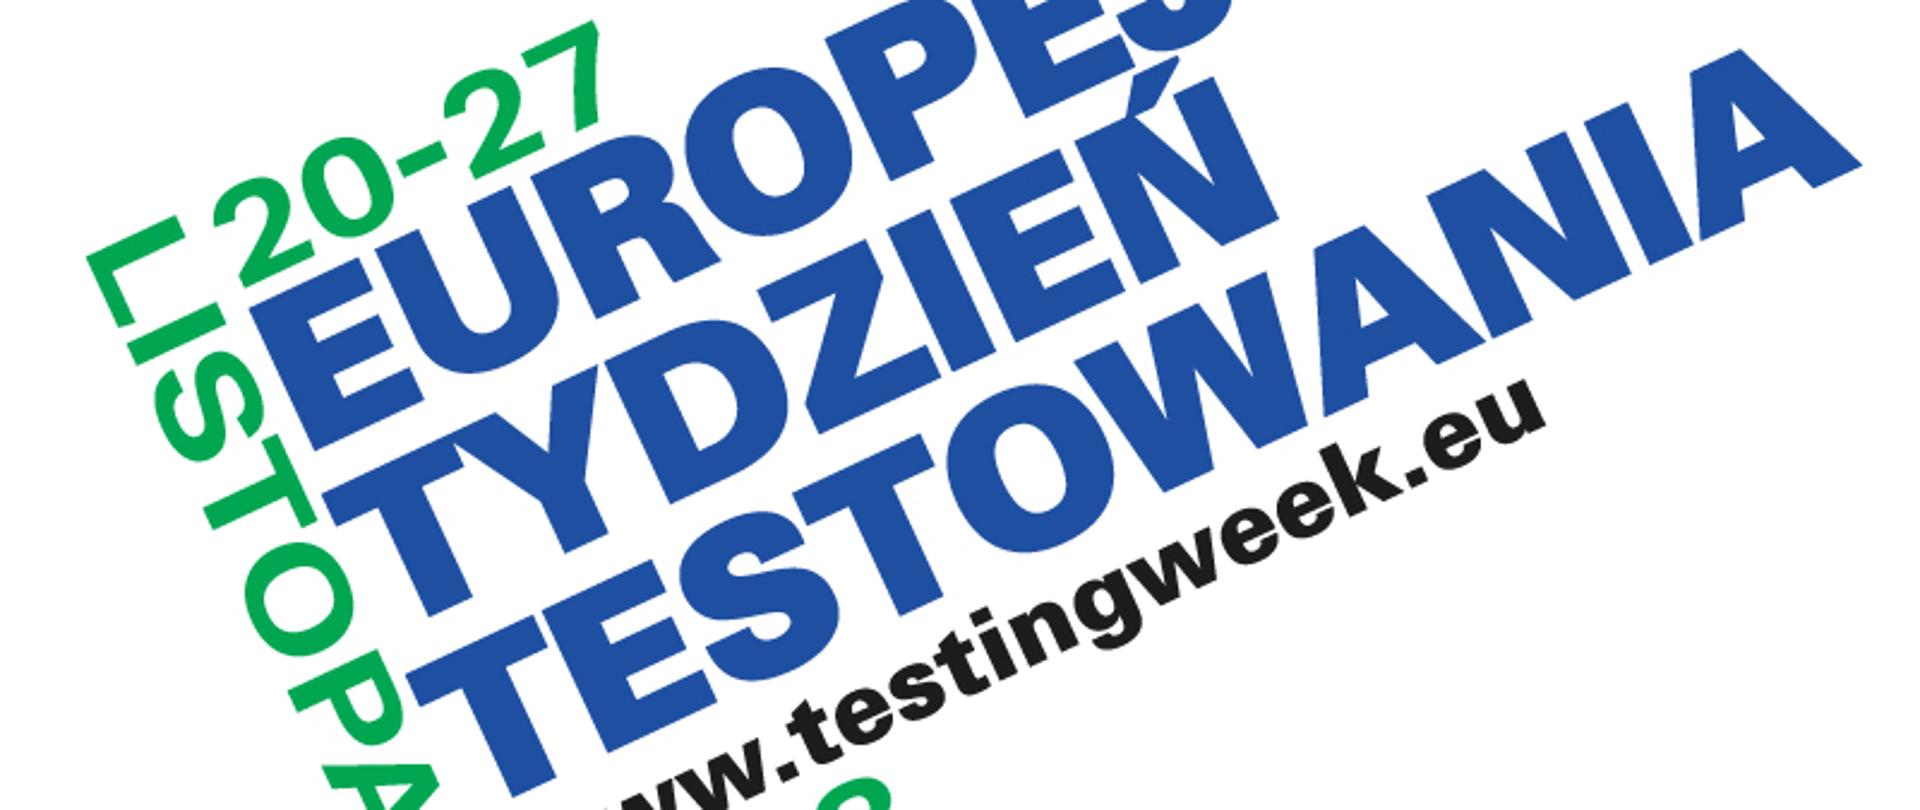 Europejski tydzień testowania od dwudziestego do dwudziestego siódmego listopada